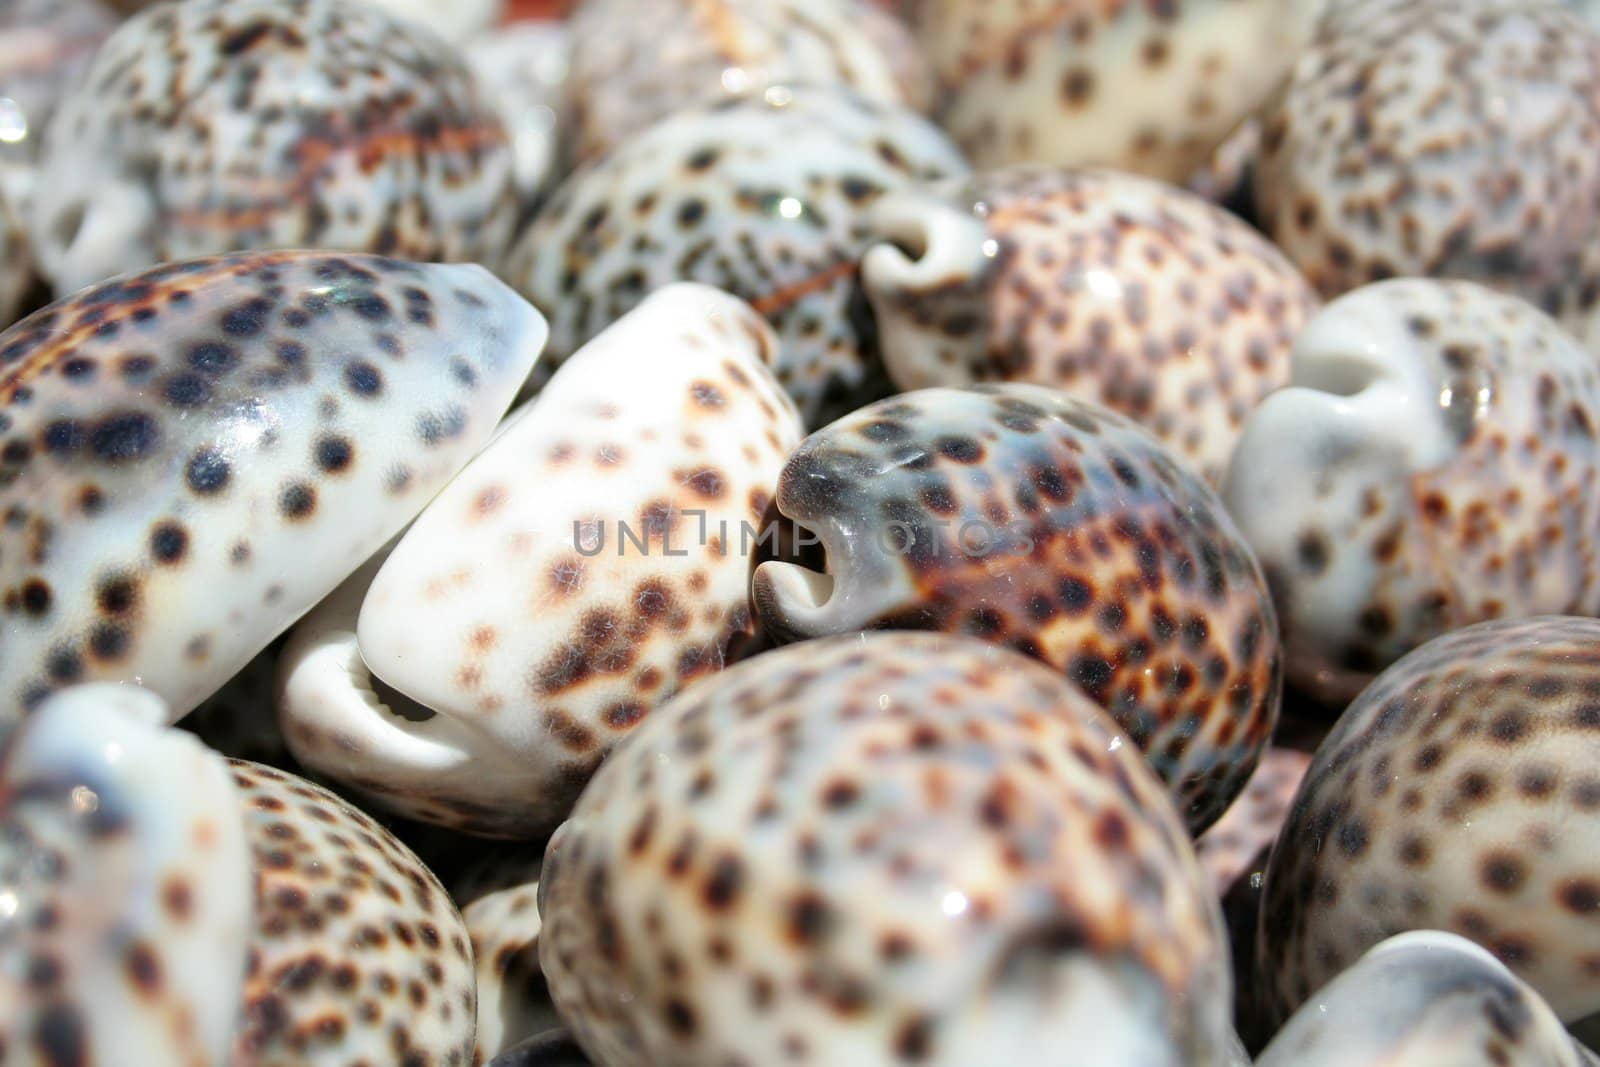 shells in the market by furzyk73